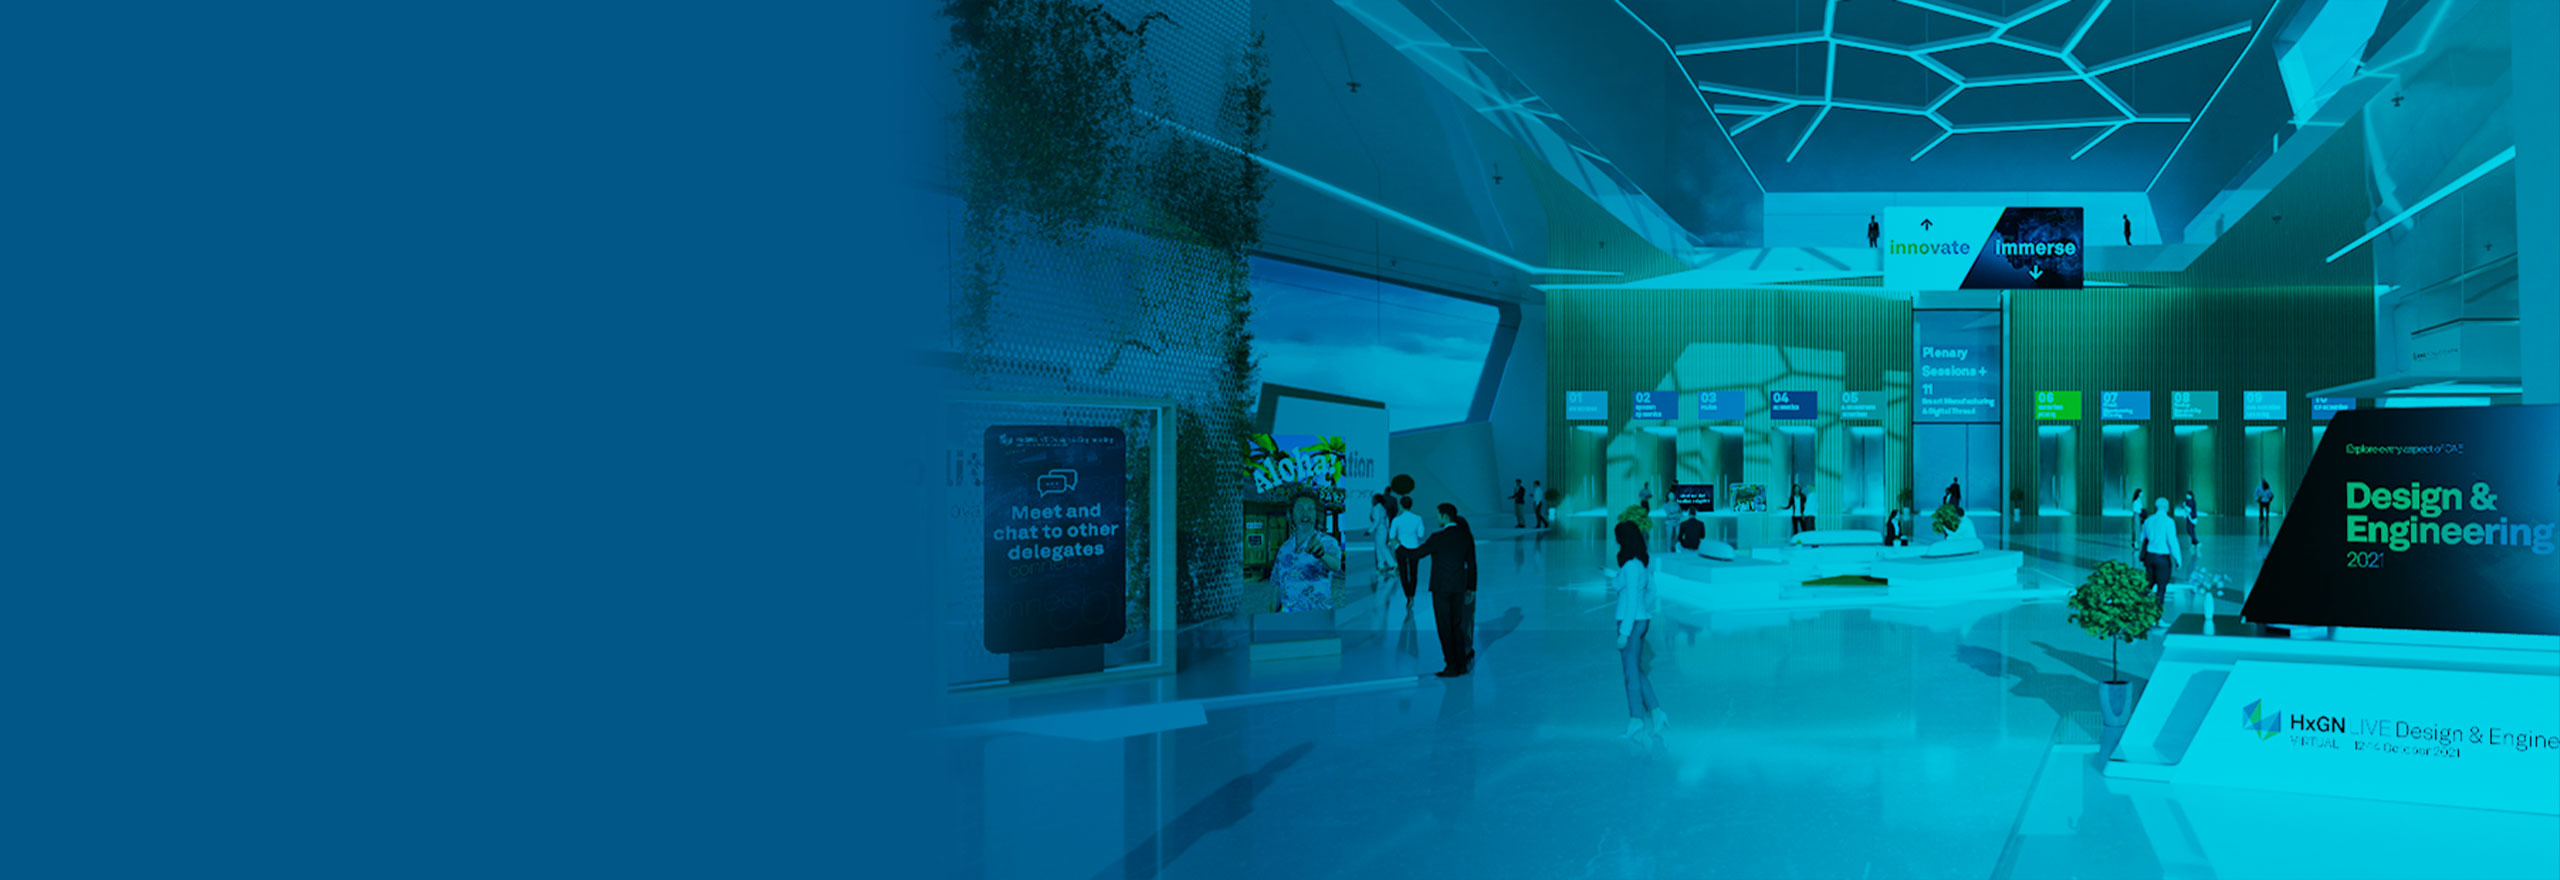 Abbildung des virtuellen Eventpavillons HxGN LIVE Design & Engineering 2021 mit mehreren Türöffnungen und Trennwänden